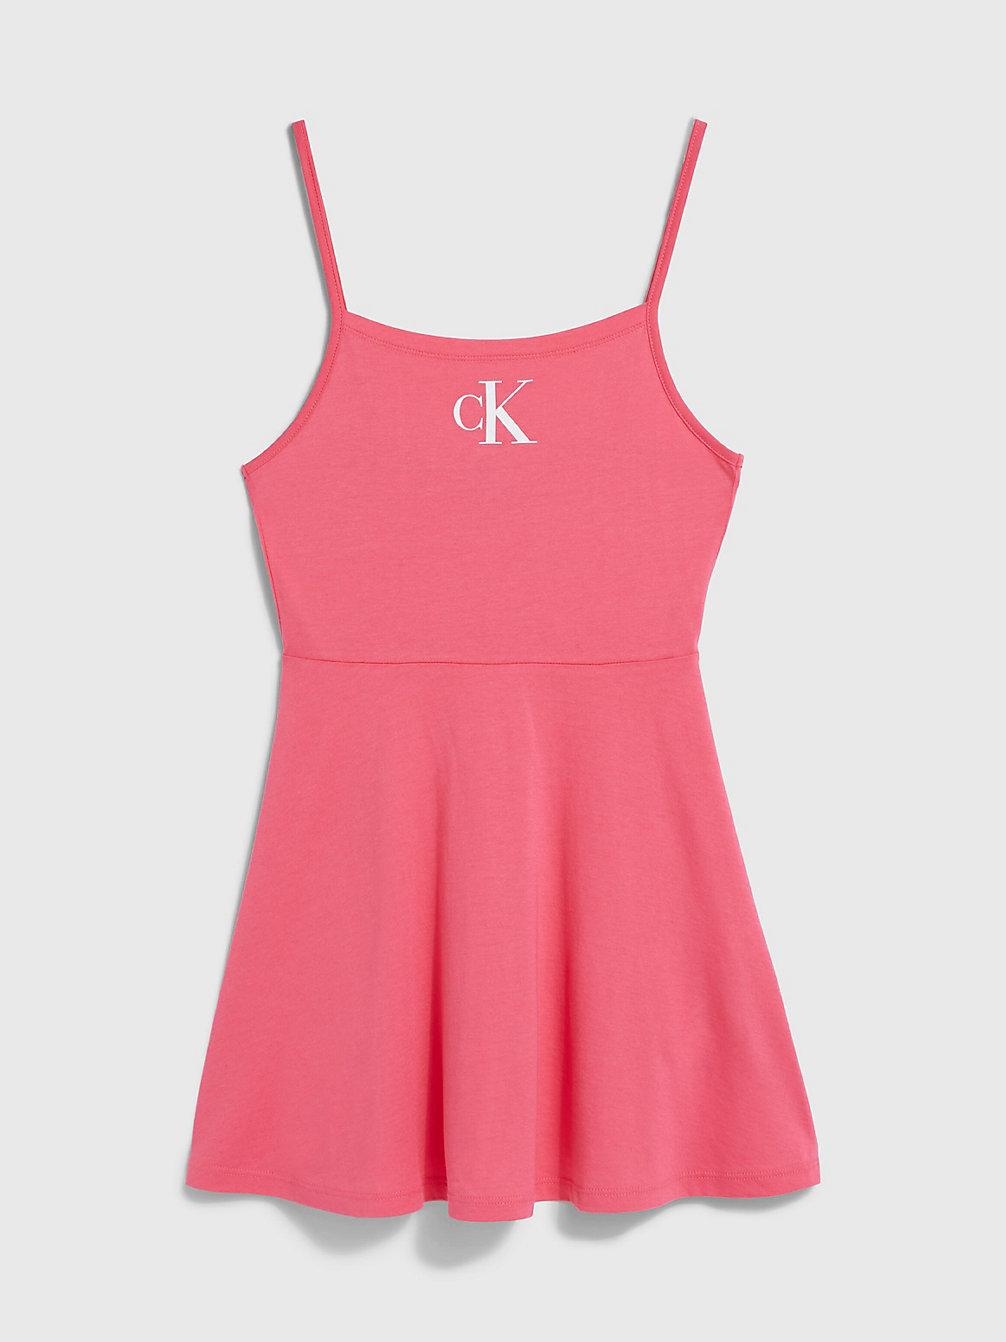 PINK FLASH Strandkleid Für Mädchen - CK Monogram undefined Maedchen Calvin Klein